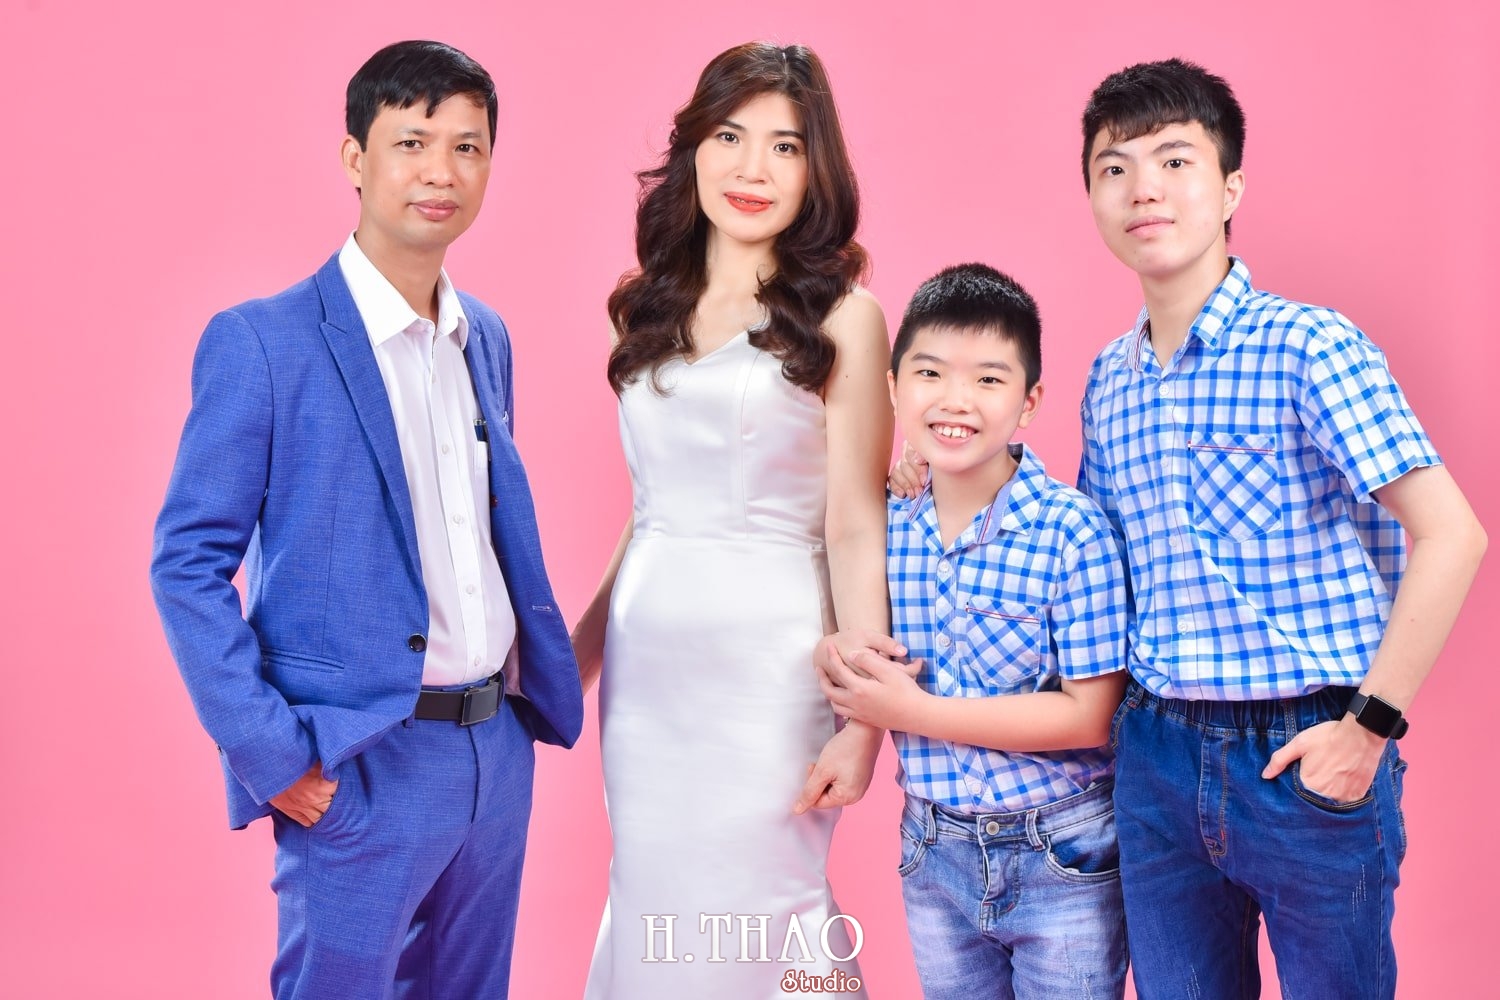 Anh gia dinh 4 nguoi 20 min - Studio chụp ảnh gia đình tự nhiên nhất tại Tp.HCM – HThao Studio